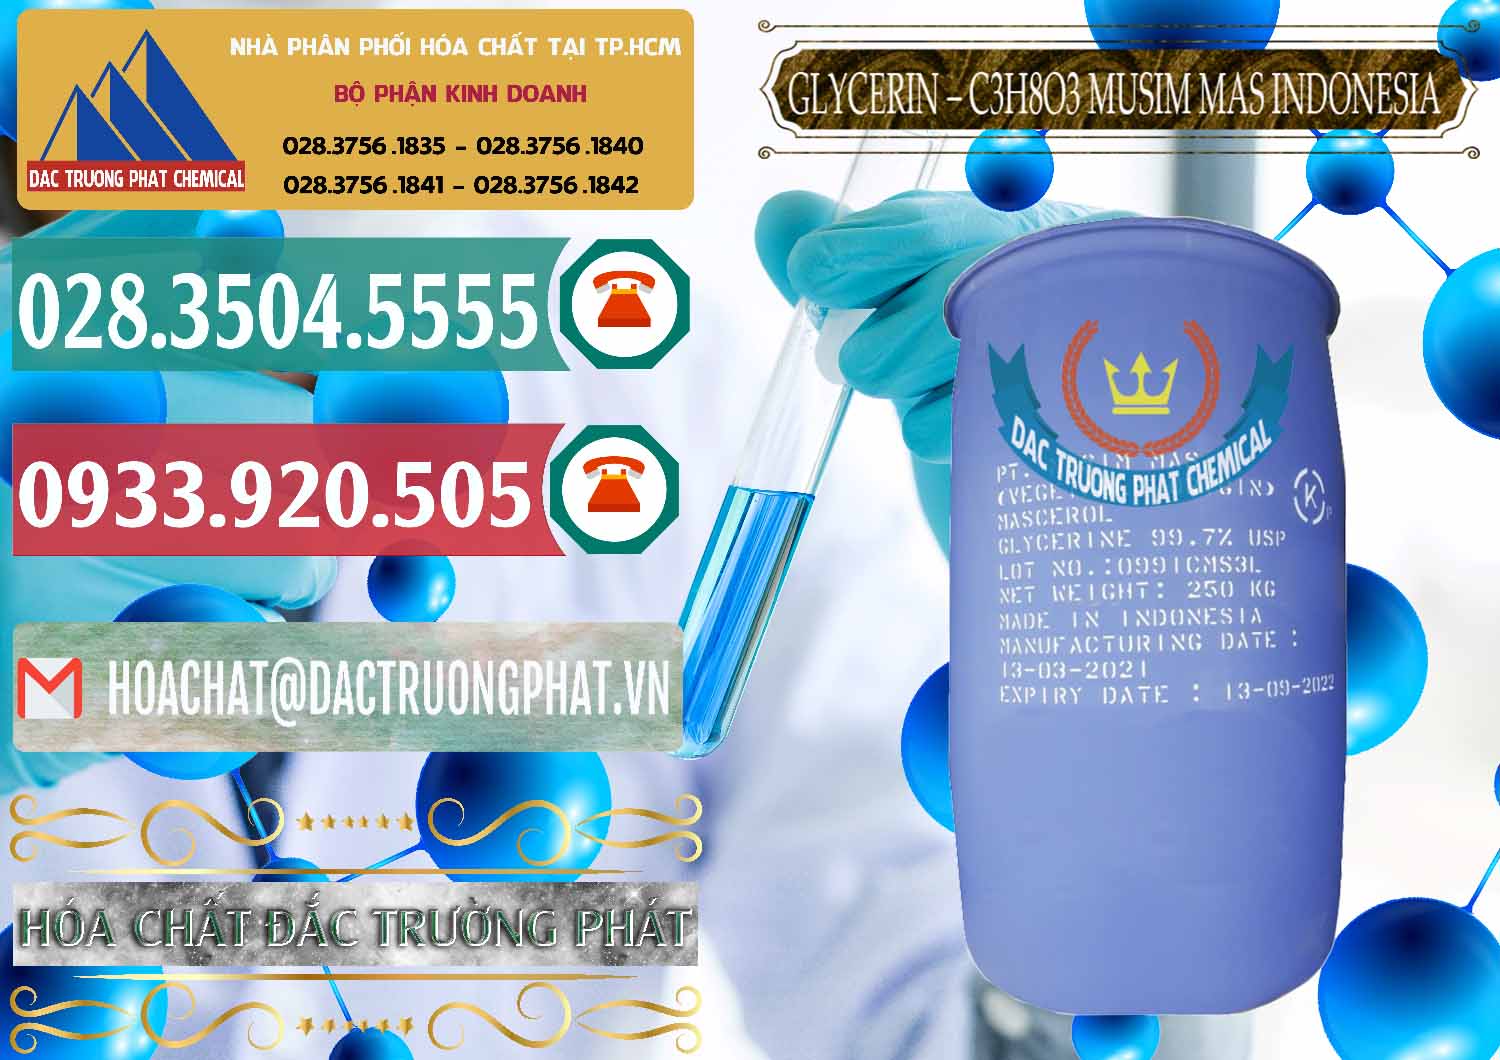 Đơn vị chuyên bán & cung cấp Glycerin – C3H8O3 99.7% Musim Mas Indonesia - 0272 - Công ty chuyên cung cấp _ bán hóa chất tại TP.HCM - muabanhoachat.vn